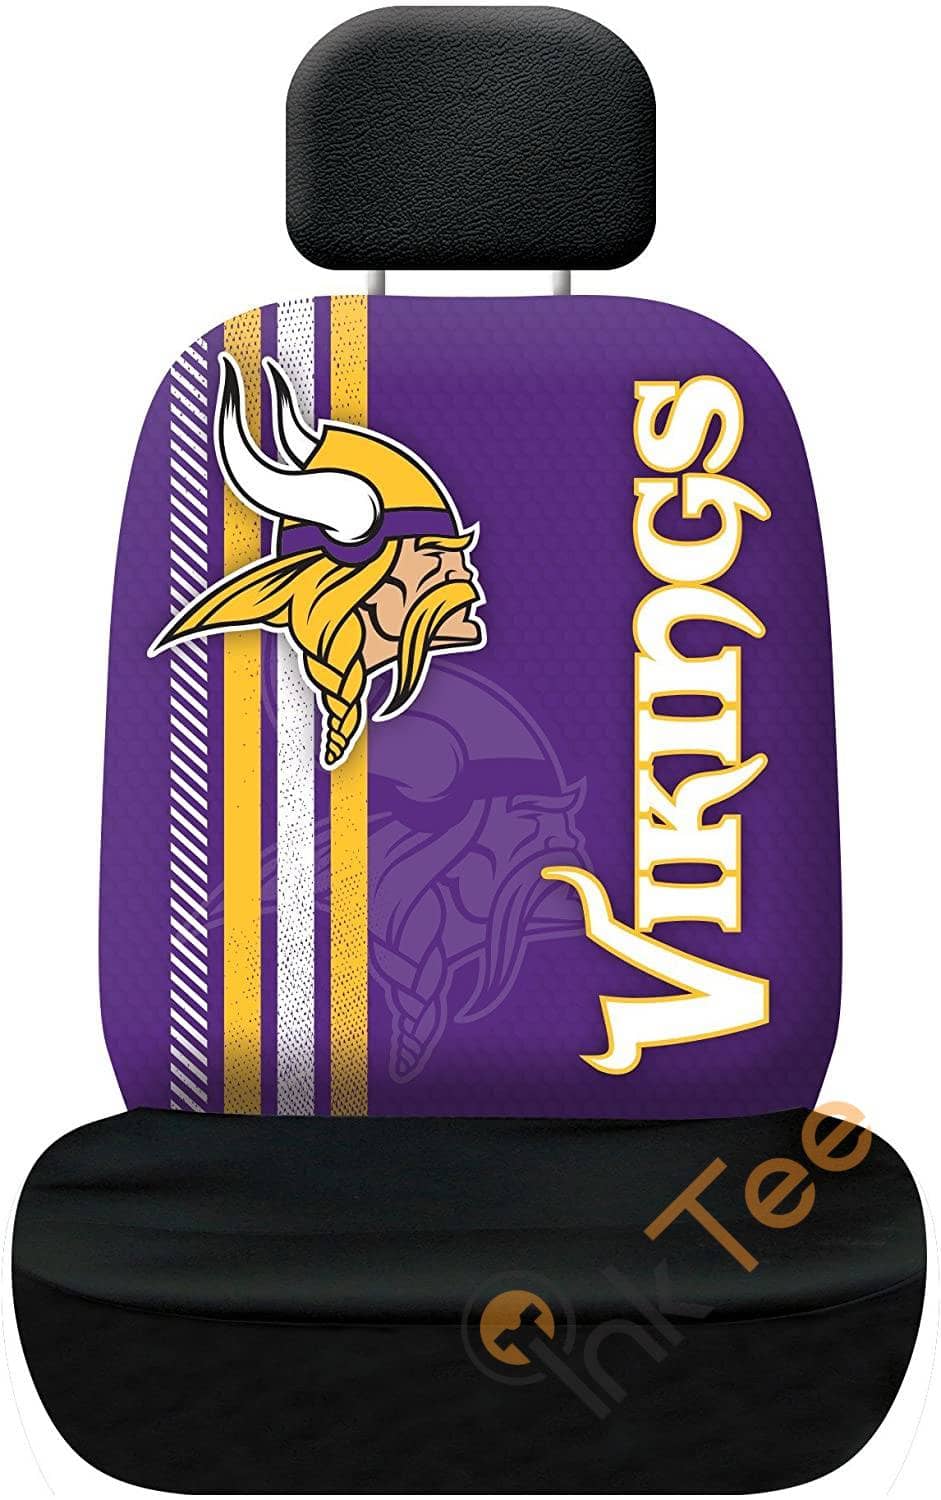 Nfl Minnesota Vikings Team Seat Cover